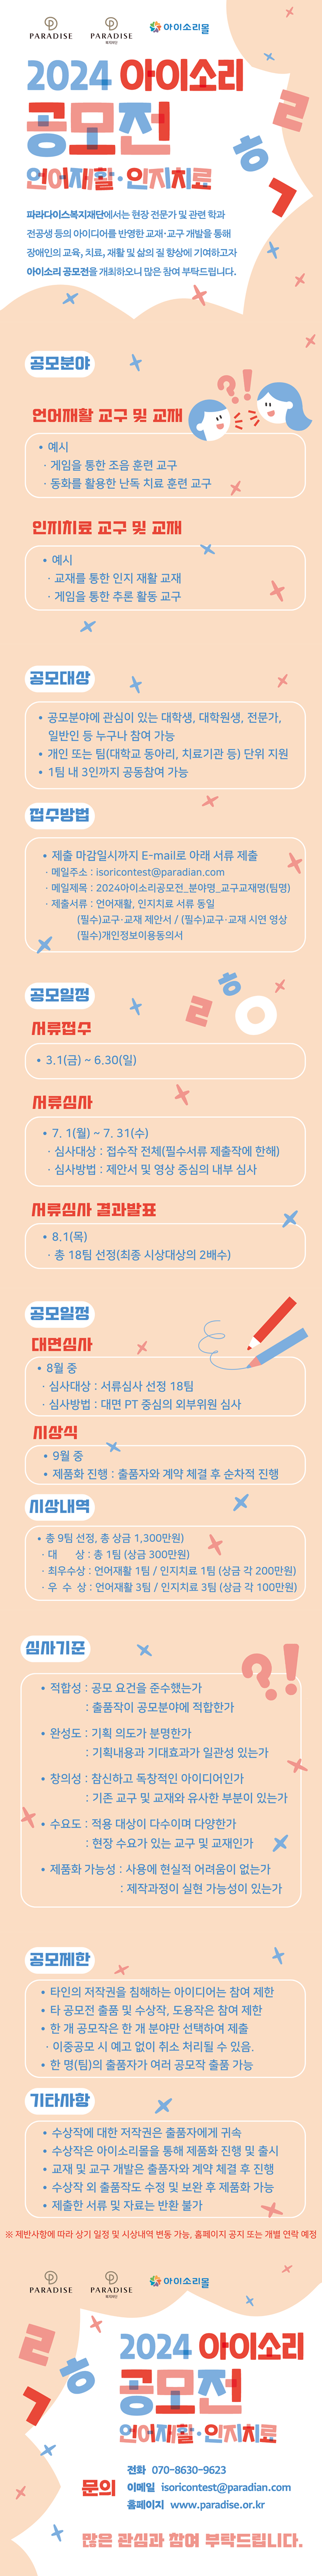 [공모] 2024 아이소리 공모전 개최